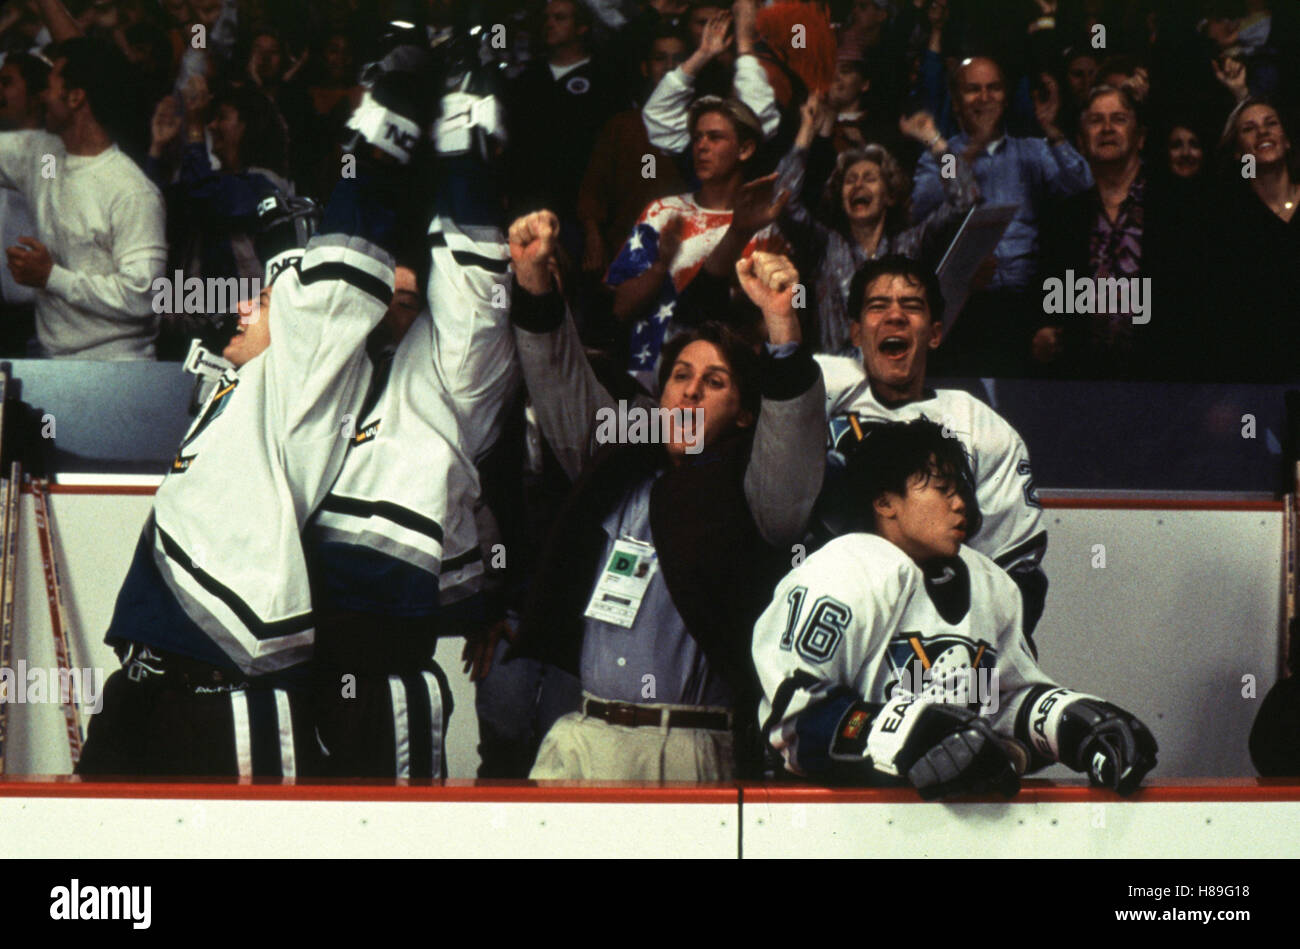 Mighty Ducks II - Das Superteam kehrt zurück, (D2 - il Mighty Ducks) USA 1994, Regie: Sam Weisman, Emilio Estevez (mi), Stichwort: Eishockey, Spieler, Tribüne, Jubel Foto Stock